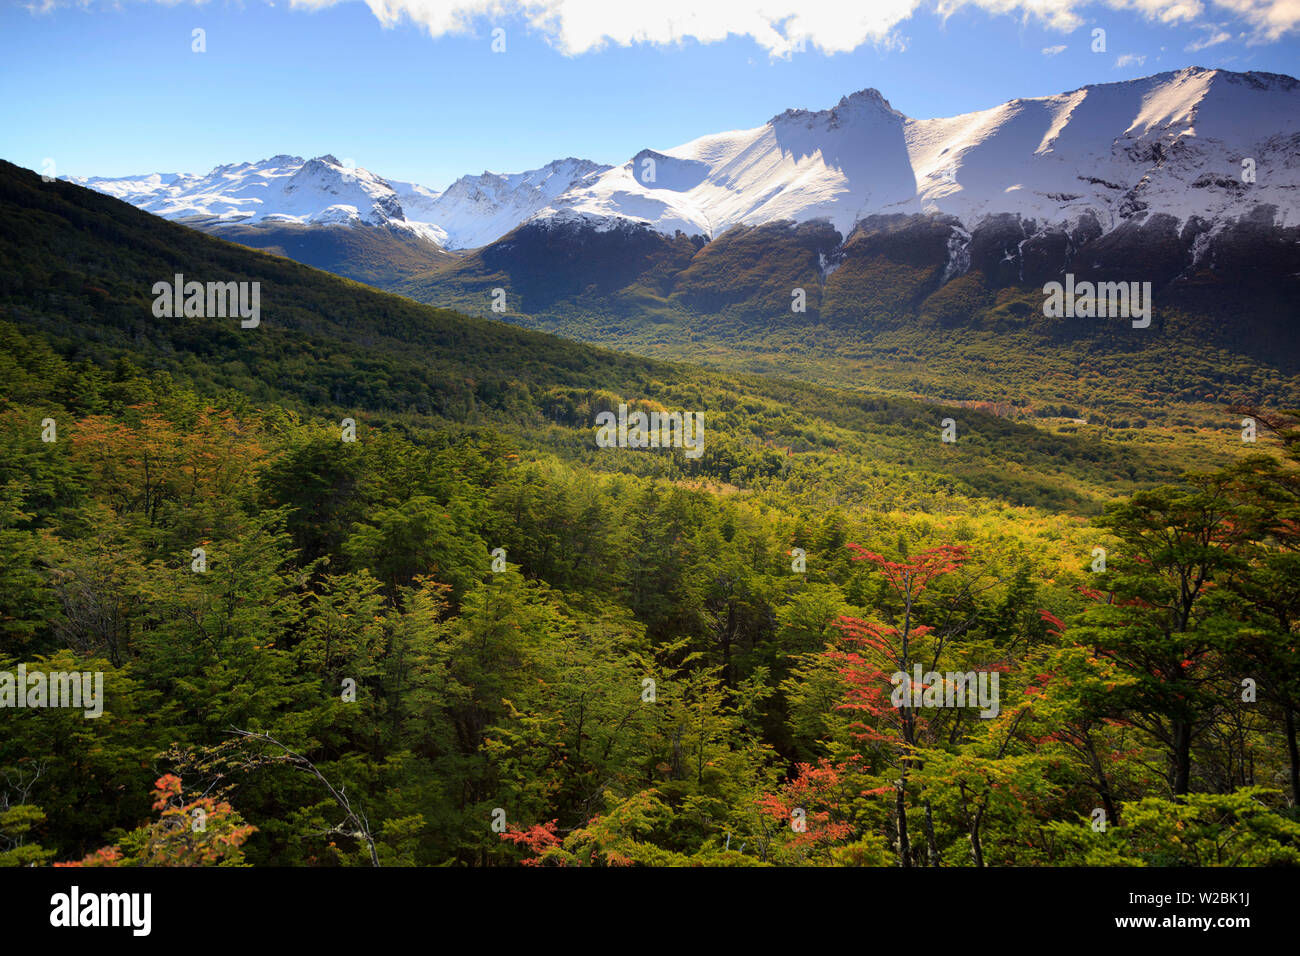 Argentina, Tierra del Fuego, Ushuaia, Tierra del Fuego National Park Stock Photo